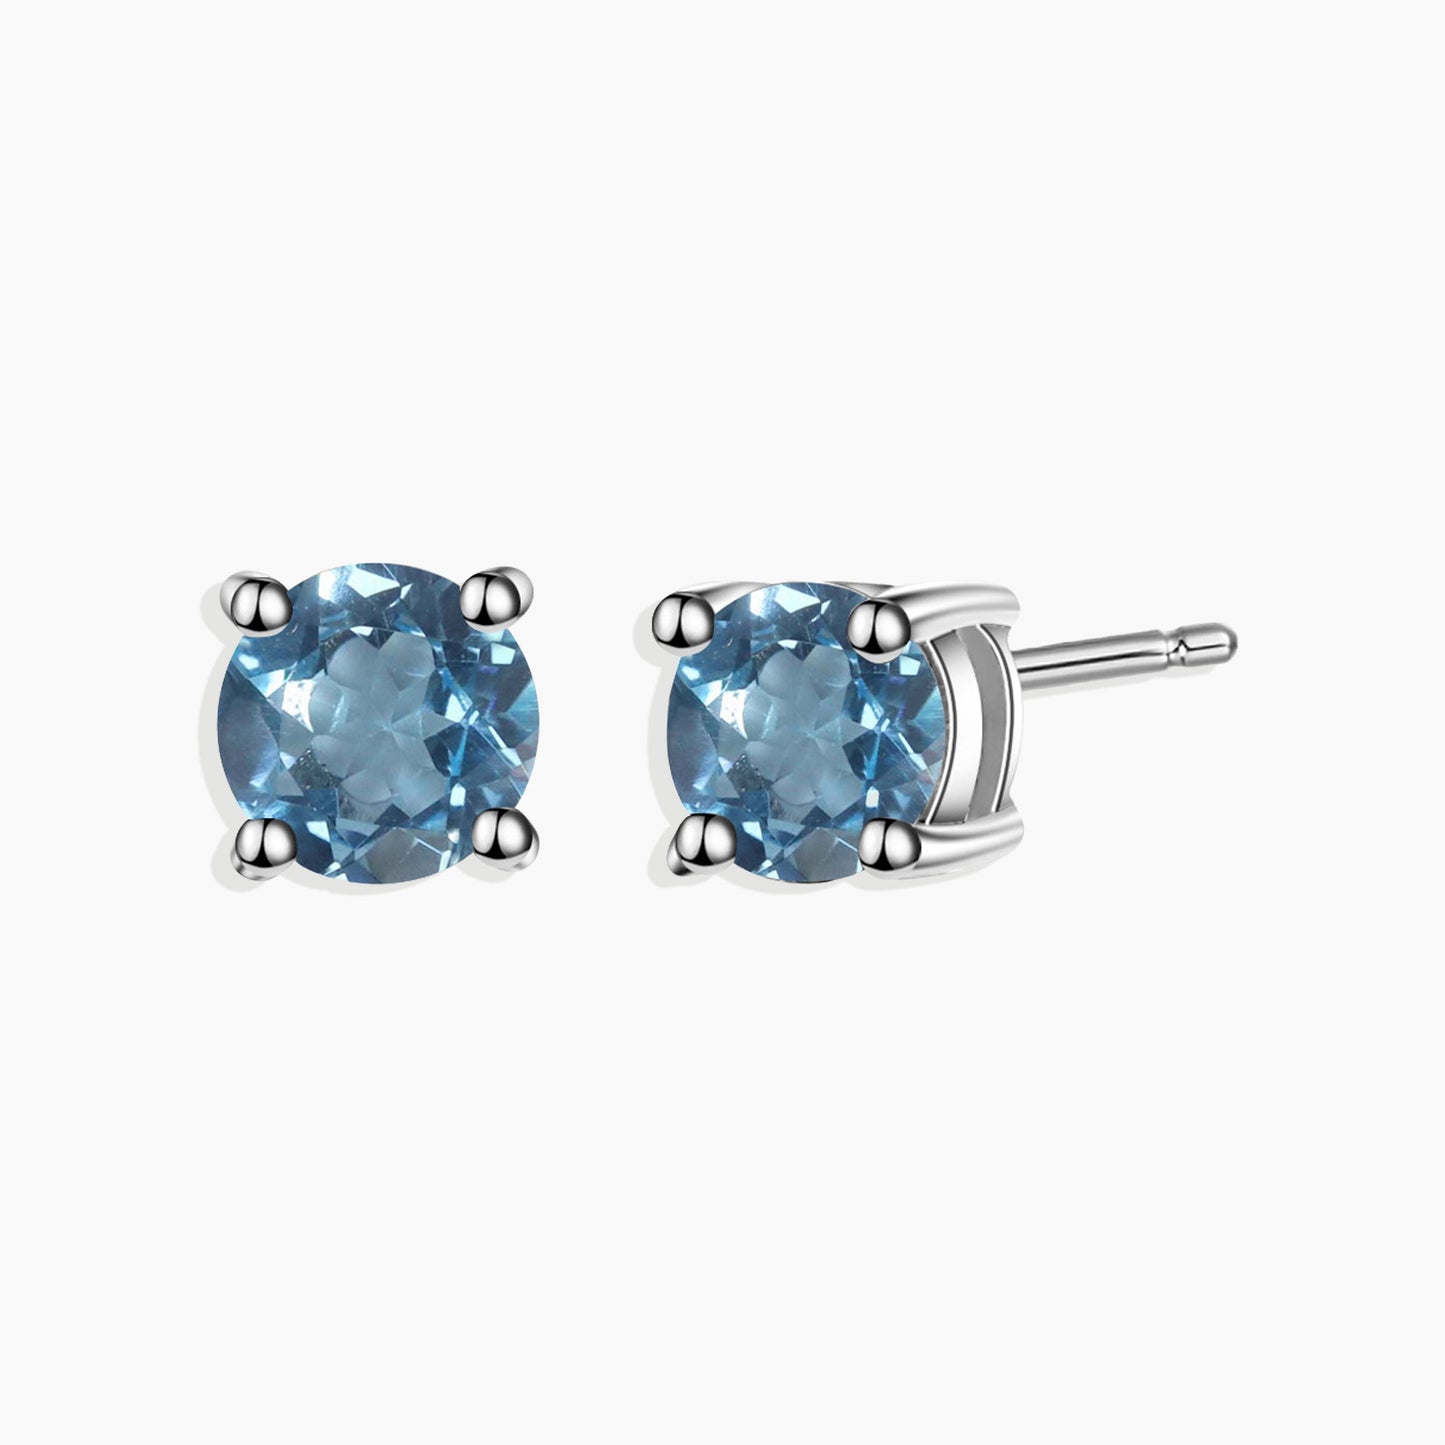 Round Cut Stud Earrings in Sterling Silver -  Swiss Blue Topaz